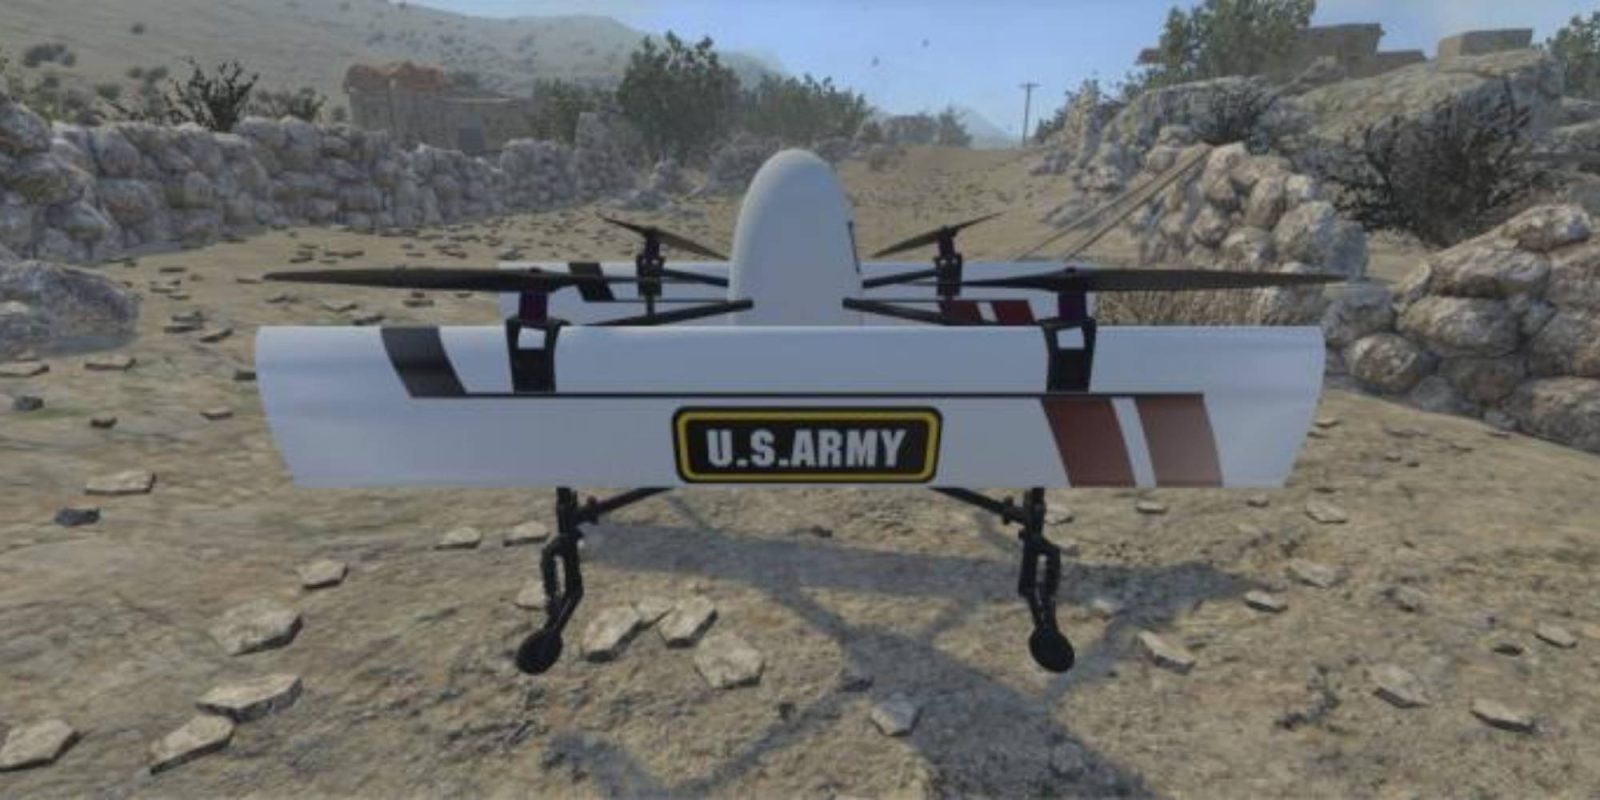 U.S. Army VTOL drones flight